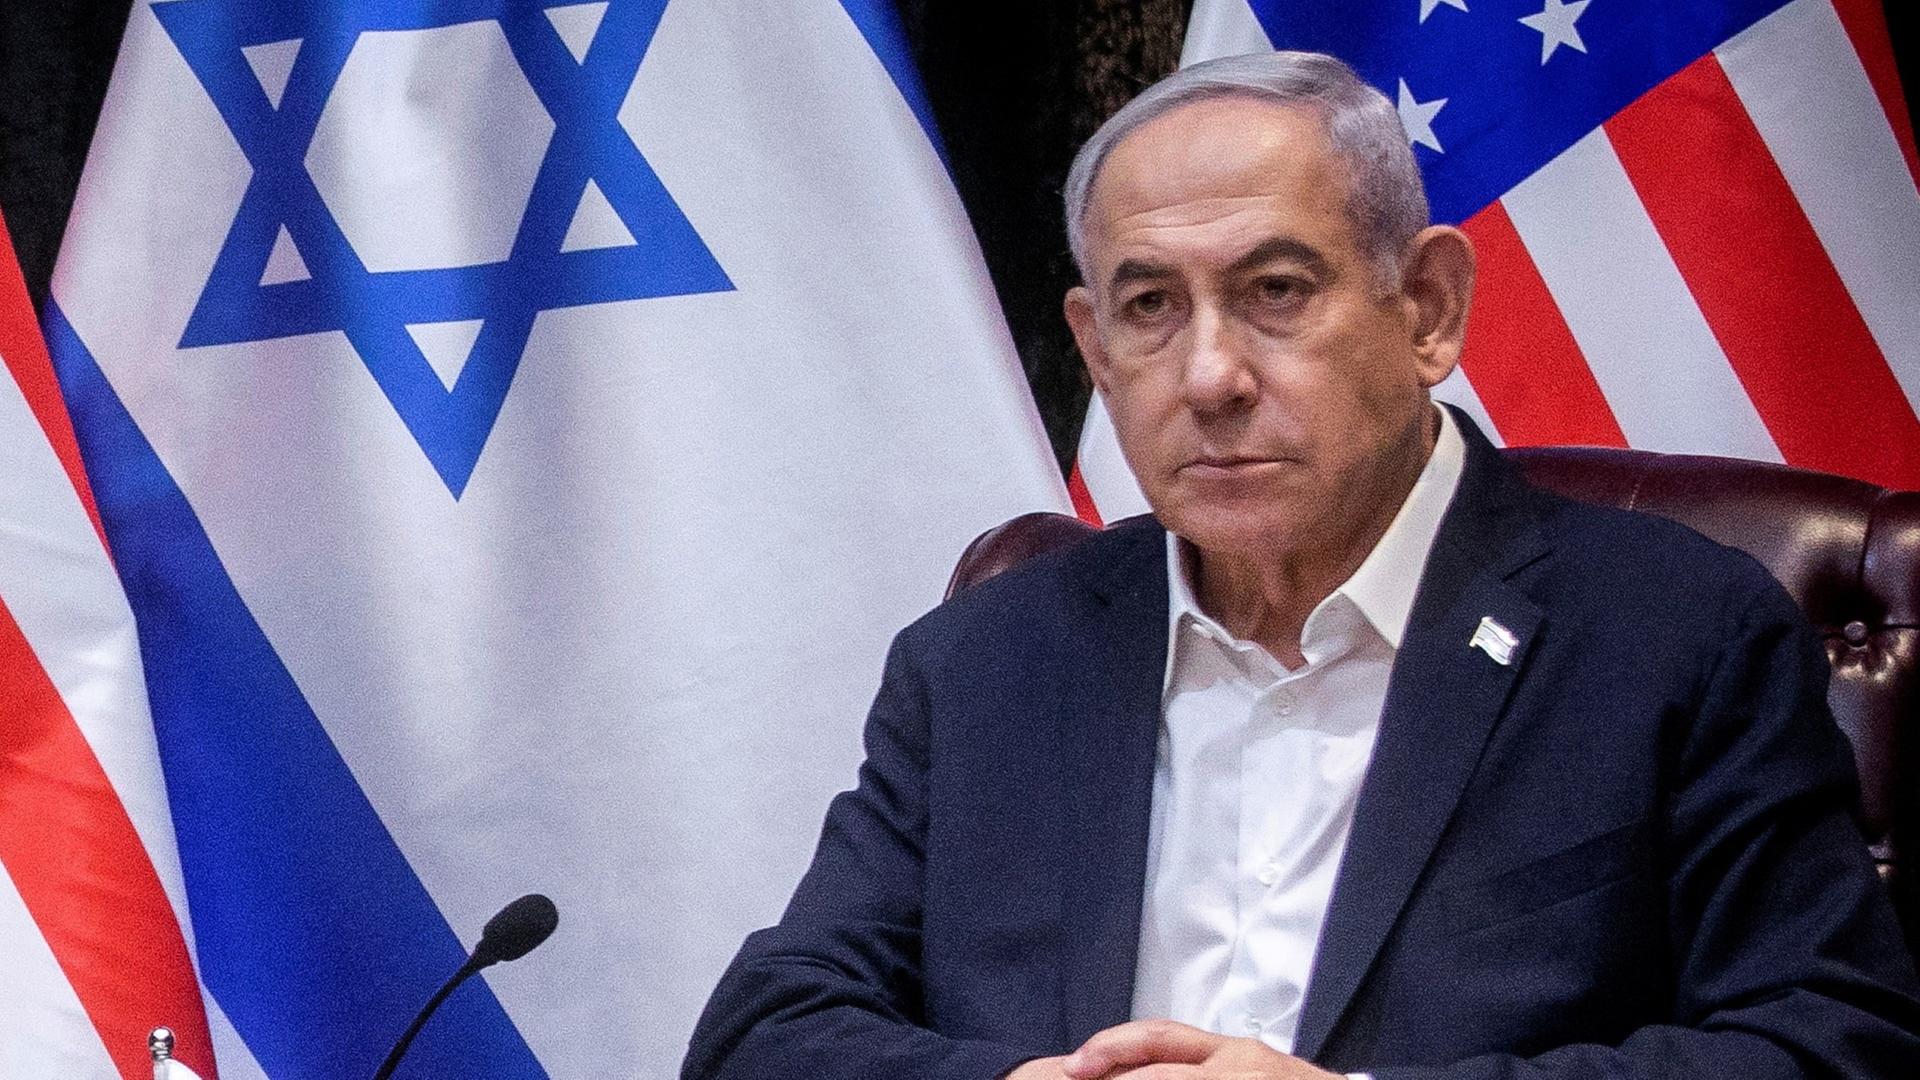 Benjamin Netanjahu, ein älterer Mann mit grauen Haaren, sitzt vor einer israelischen und einer US-amerikanischen Flagge in einer Pressekonferenz.